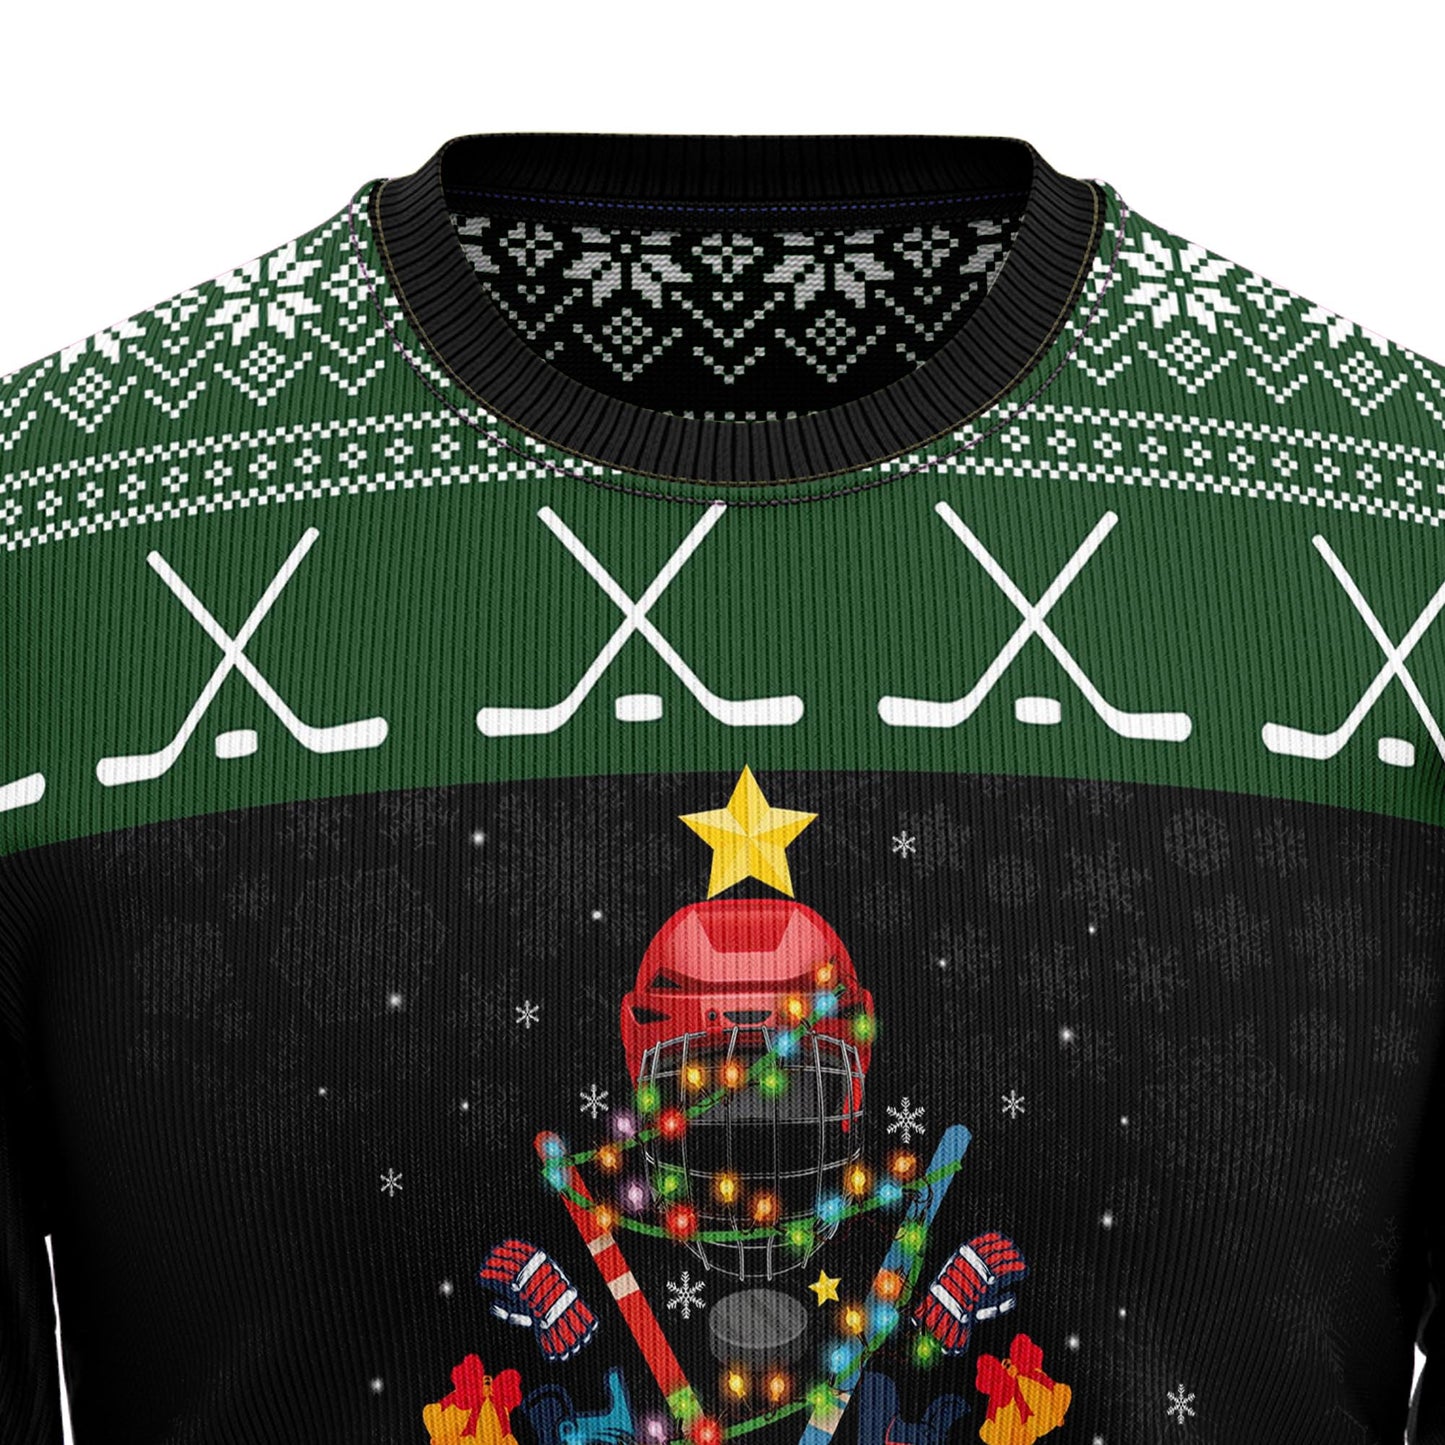 Hockey Christmas T259 Ugly Christmas Sweater